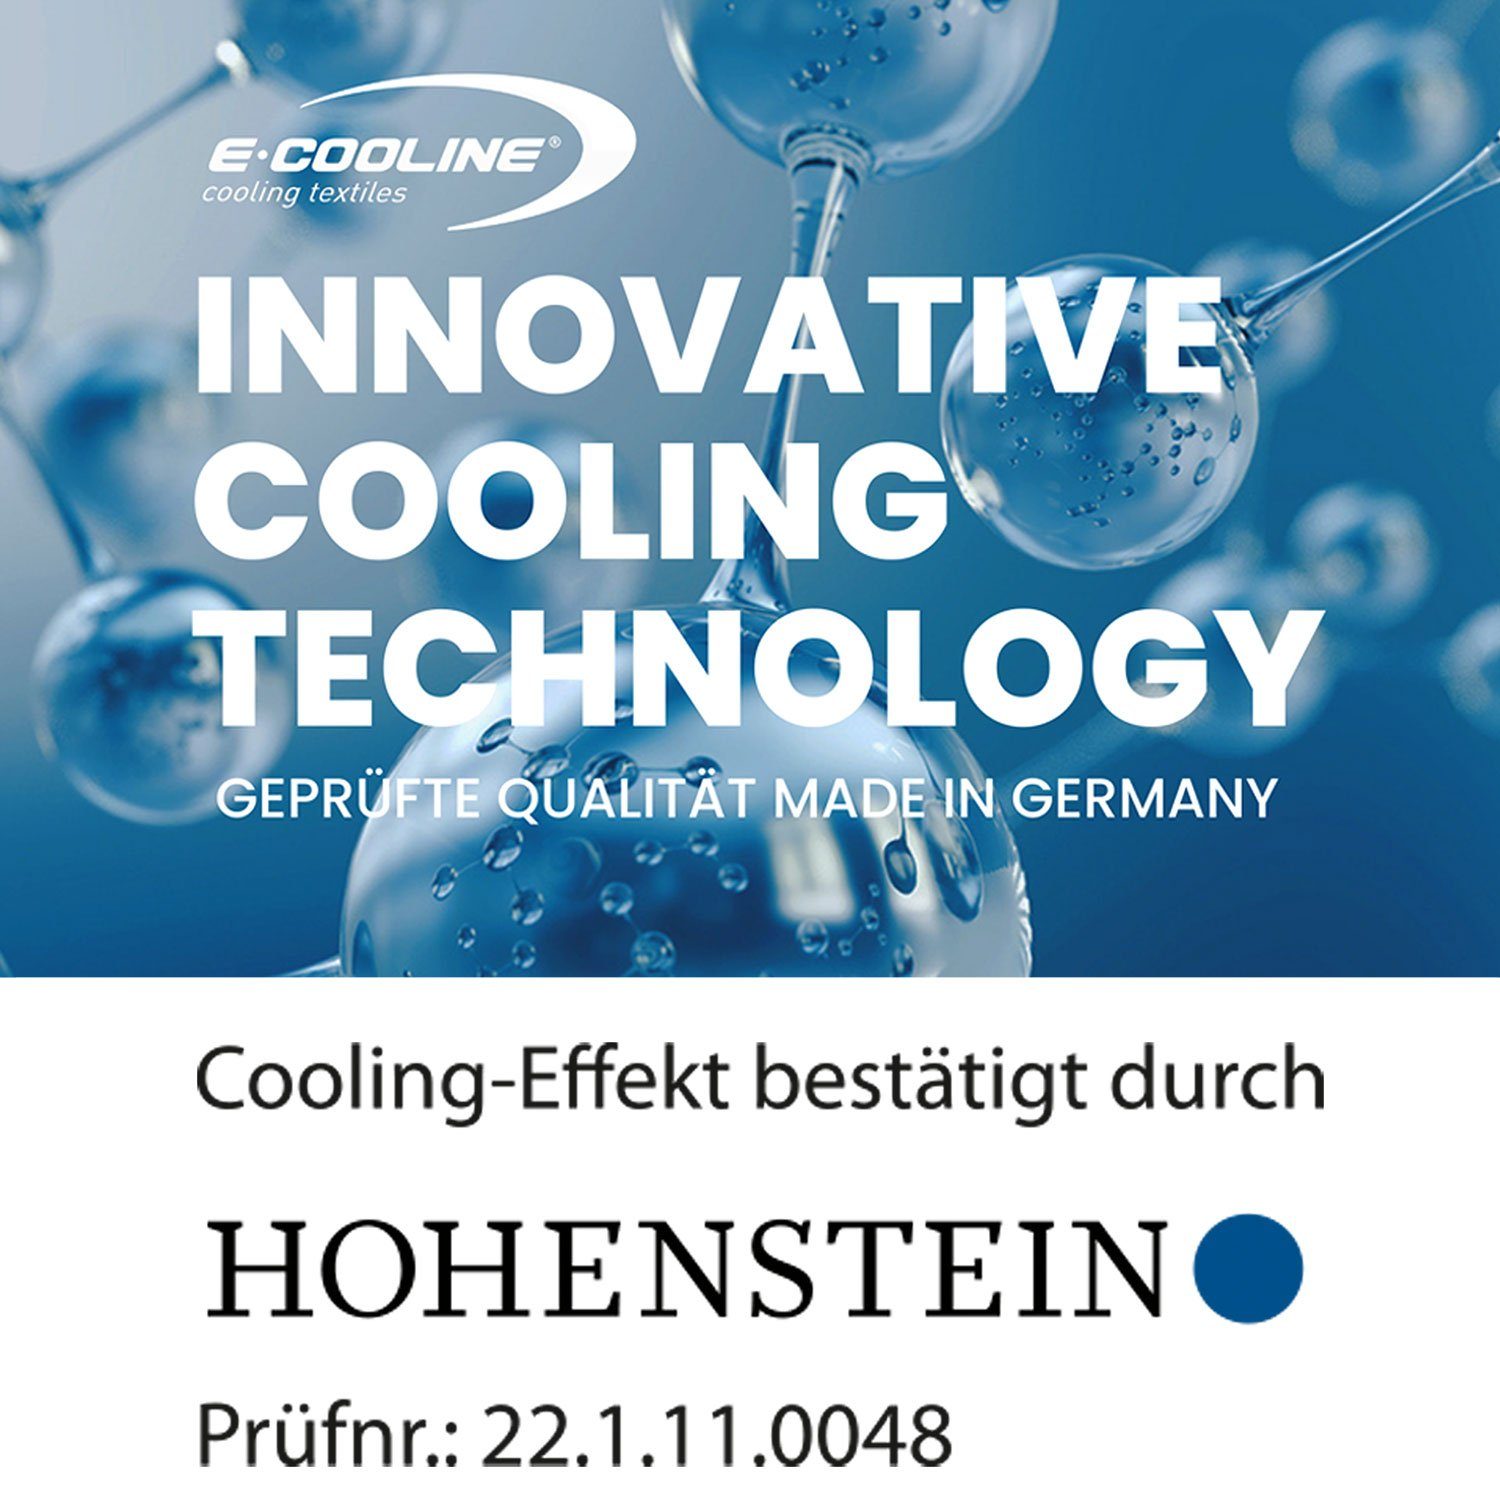 Klimaanlage Bandana mit Wasser, stundenlange Kühlung, durch - E.COOLINE aktive Aktivierung kühlend - Anziehen Blau Kühlung zum